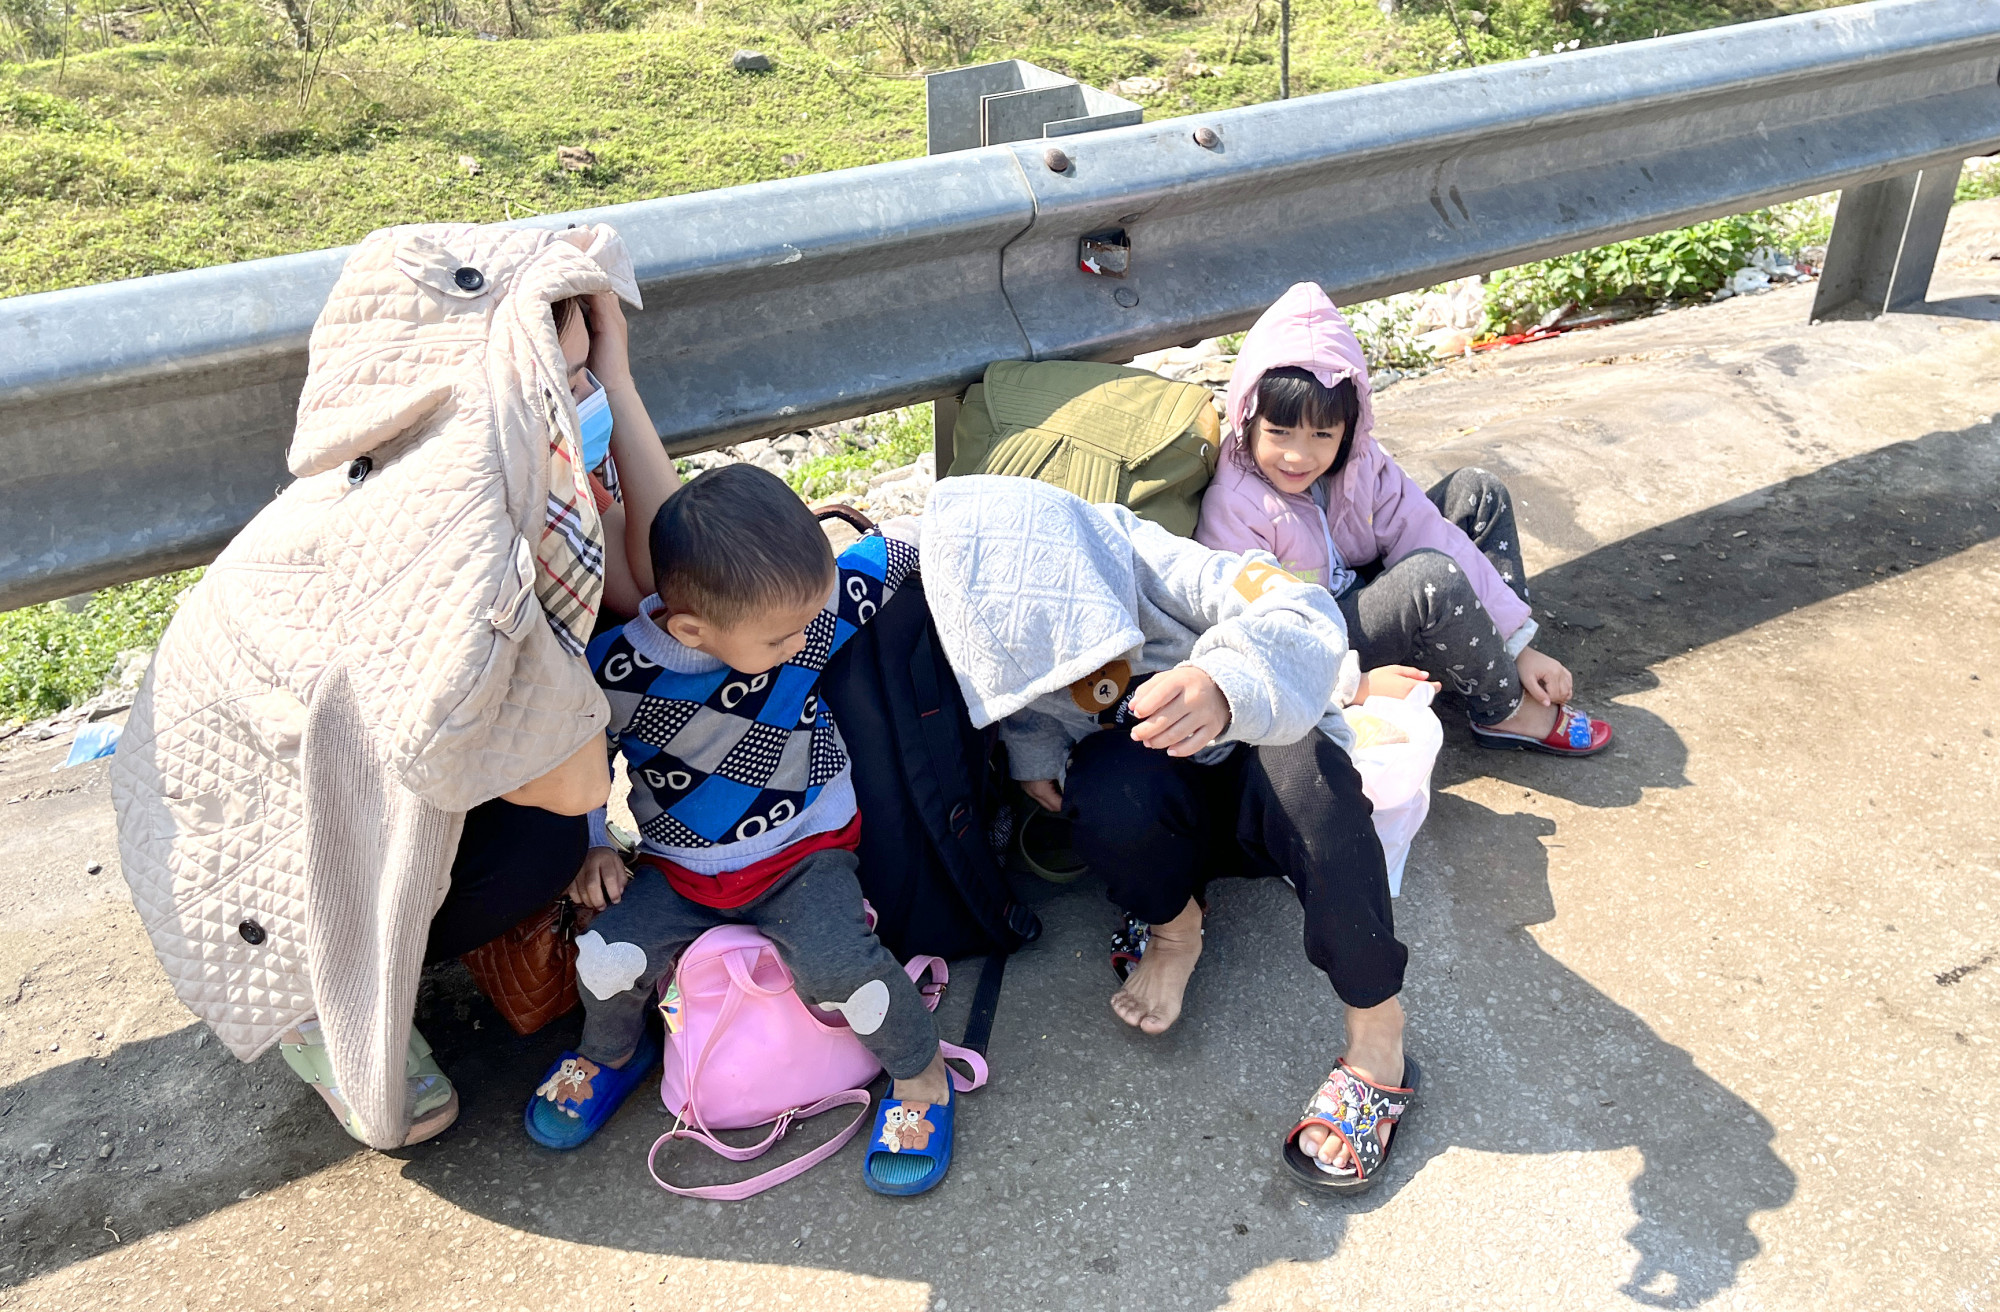 Nhiều trẻ nhỏ ngồi vật vờ bên lề đường cùng bố mẹ đón xe vào miền Nam - Ảnh: Phan Ngọc